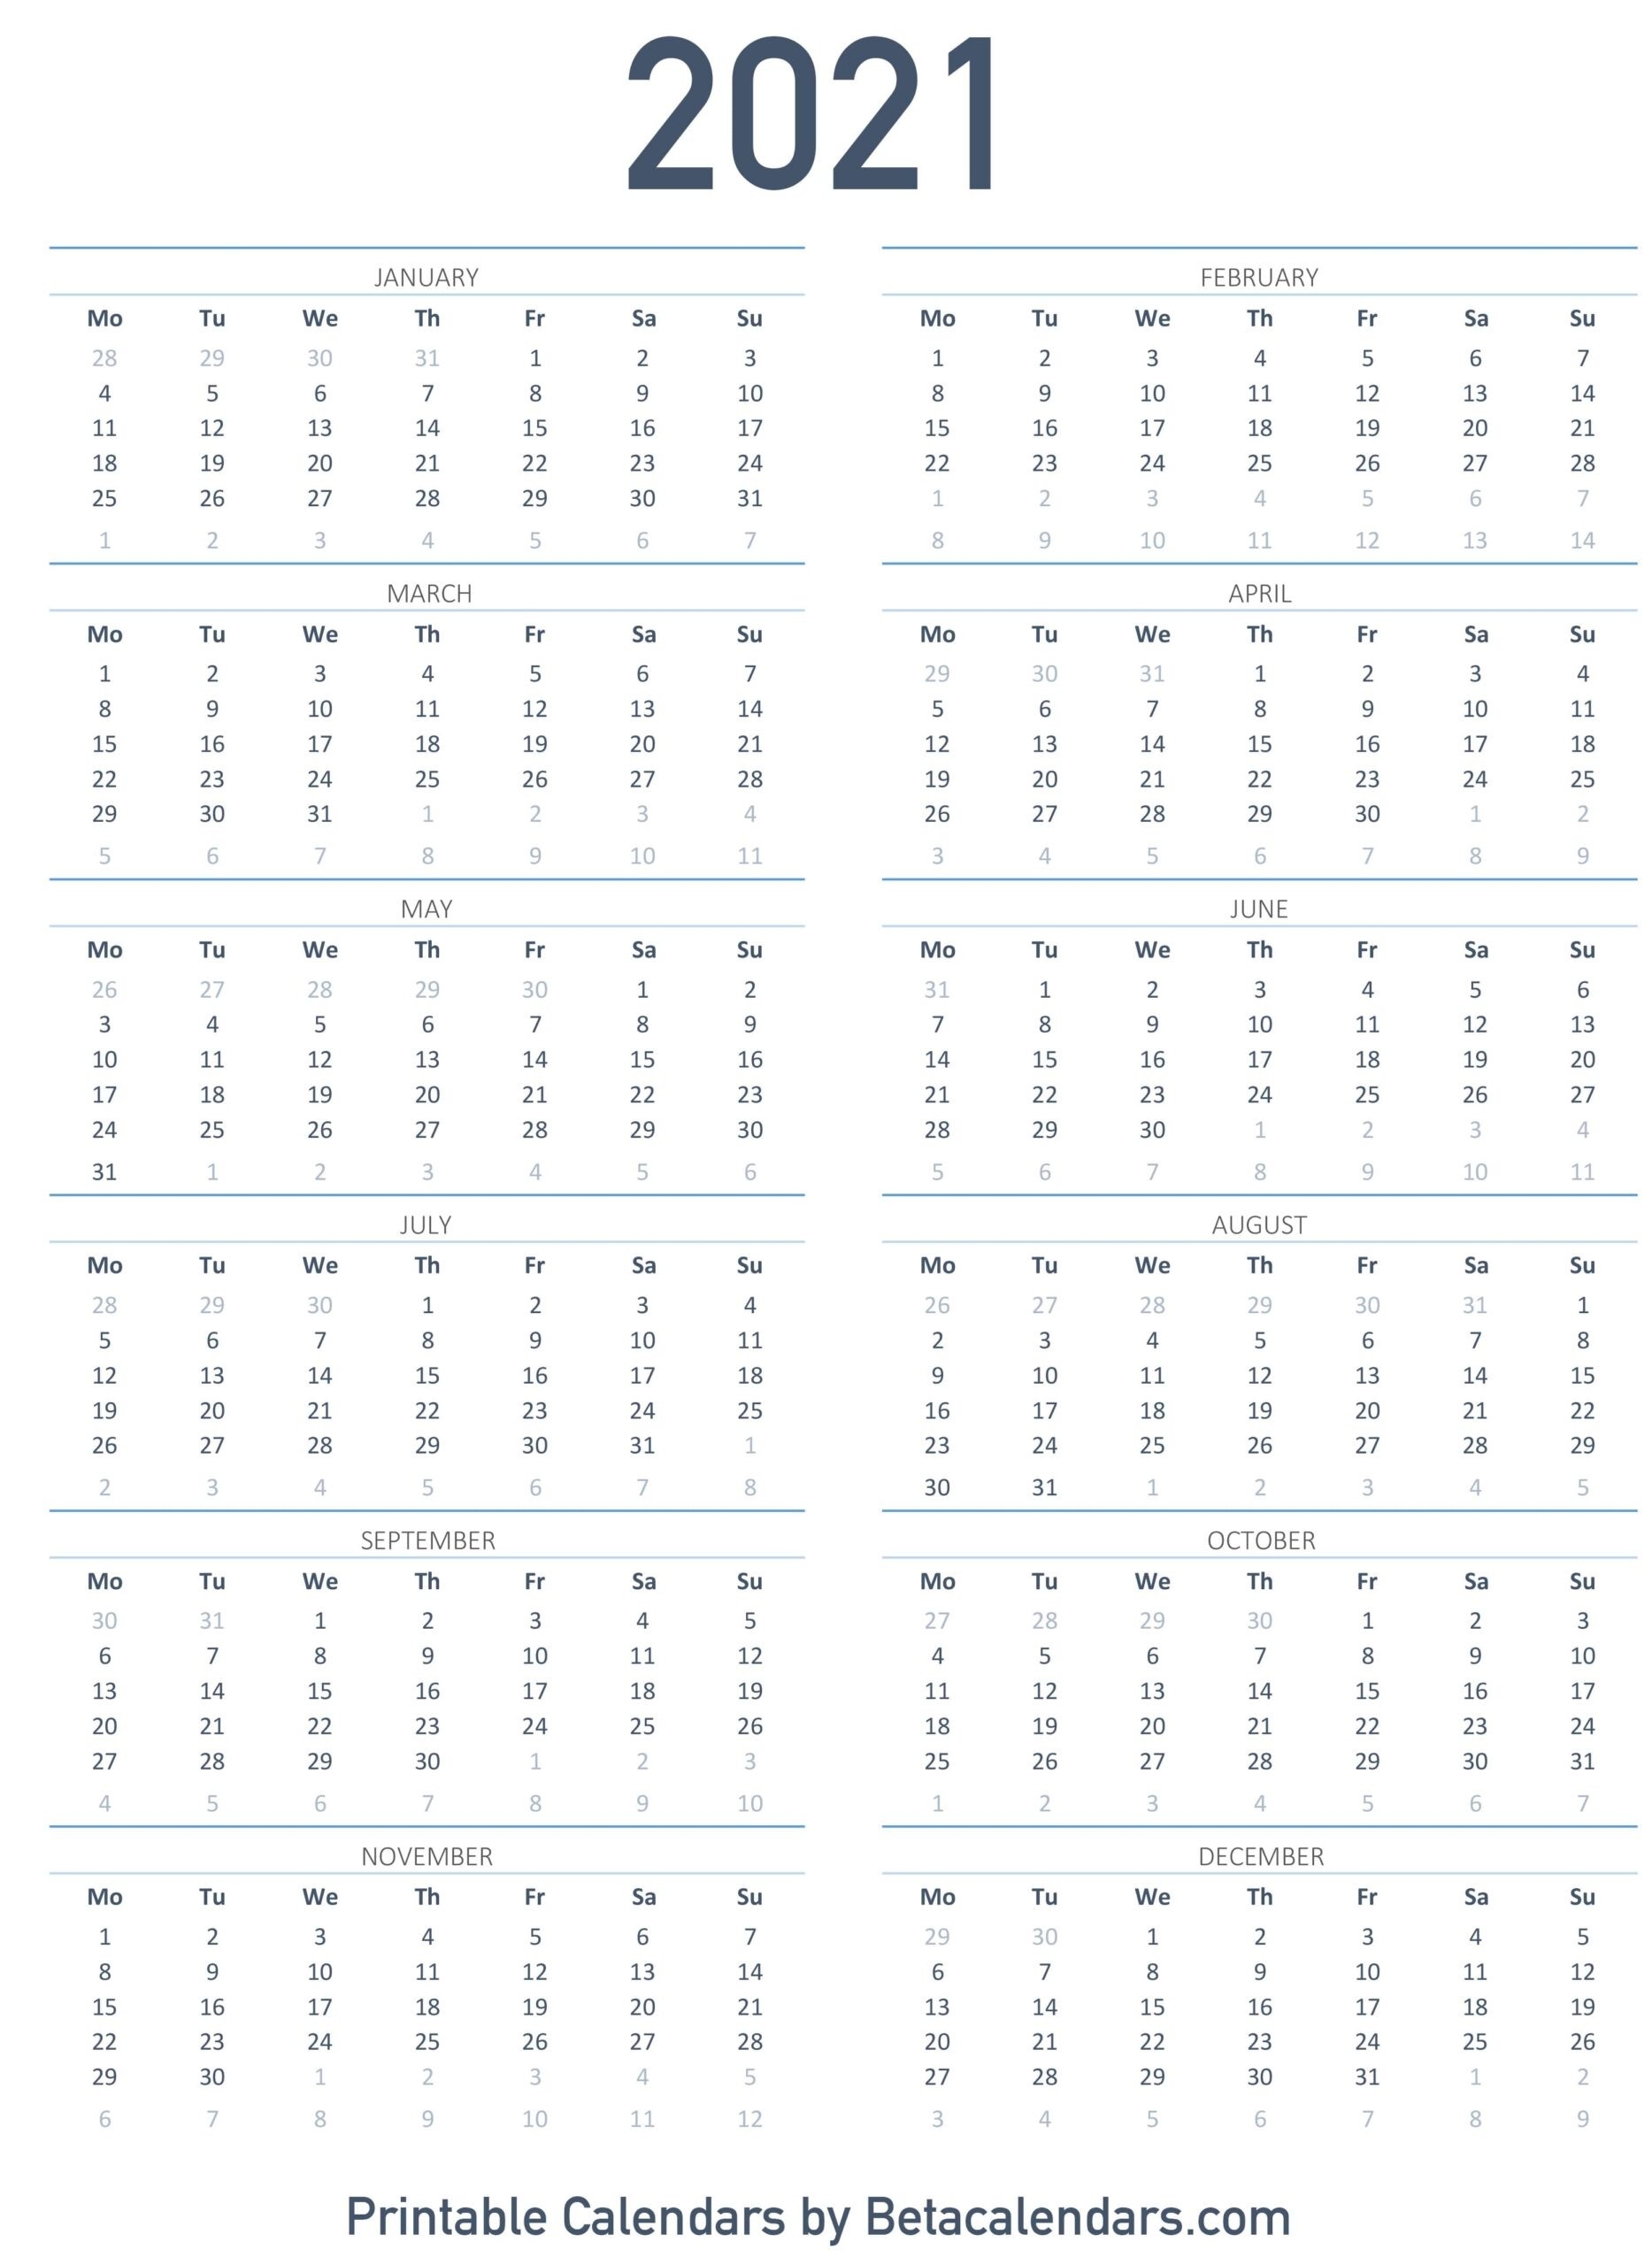 Printable Calendar 2021 | Download &amp; Print Free Blank Calendars  Free Print 2021 Calendars Without Downloading